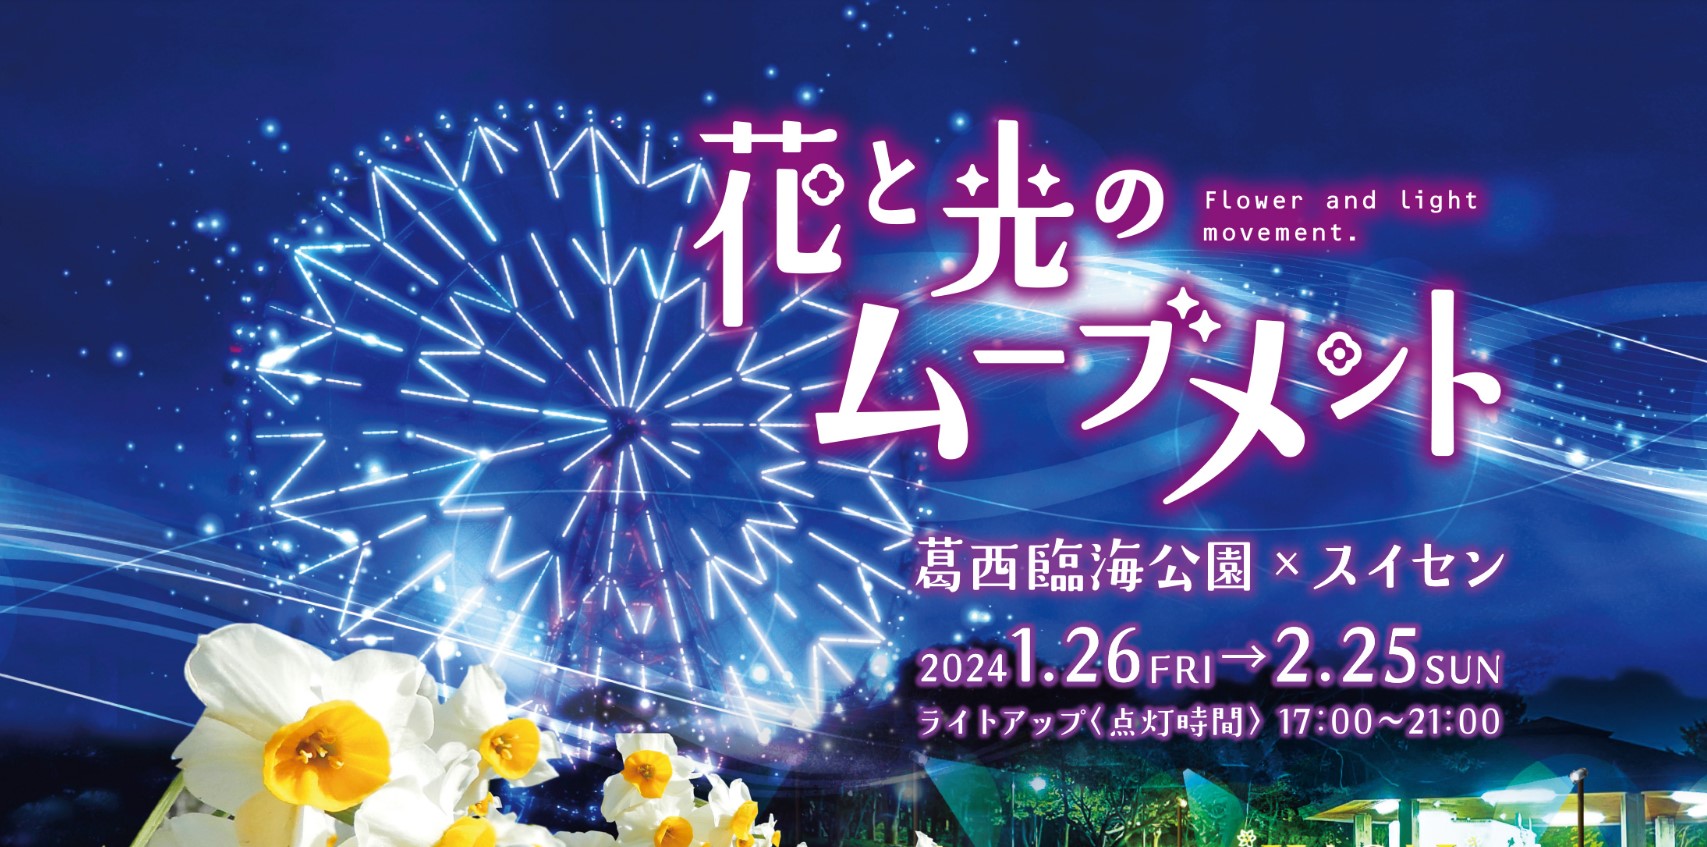 【キッチンカーイベント情報】花と光のムーブメントin葛西臨海公園×スイセンが開催されます！